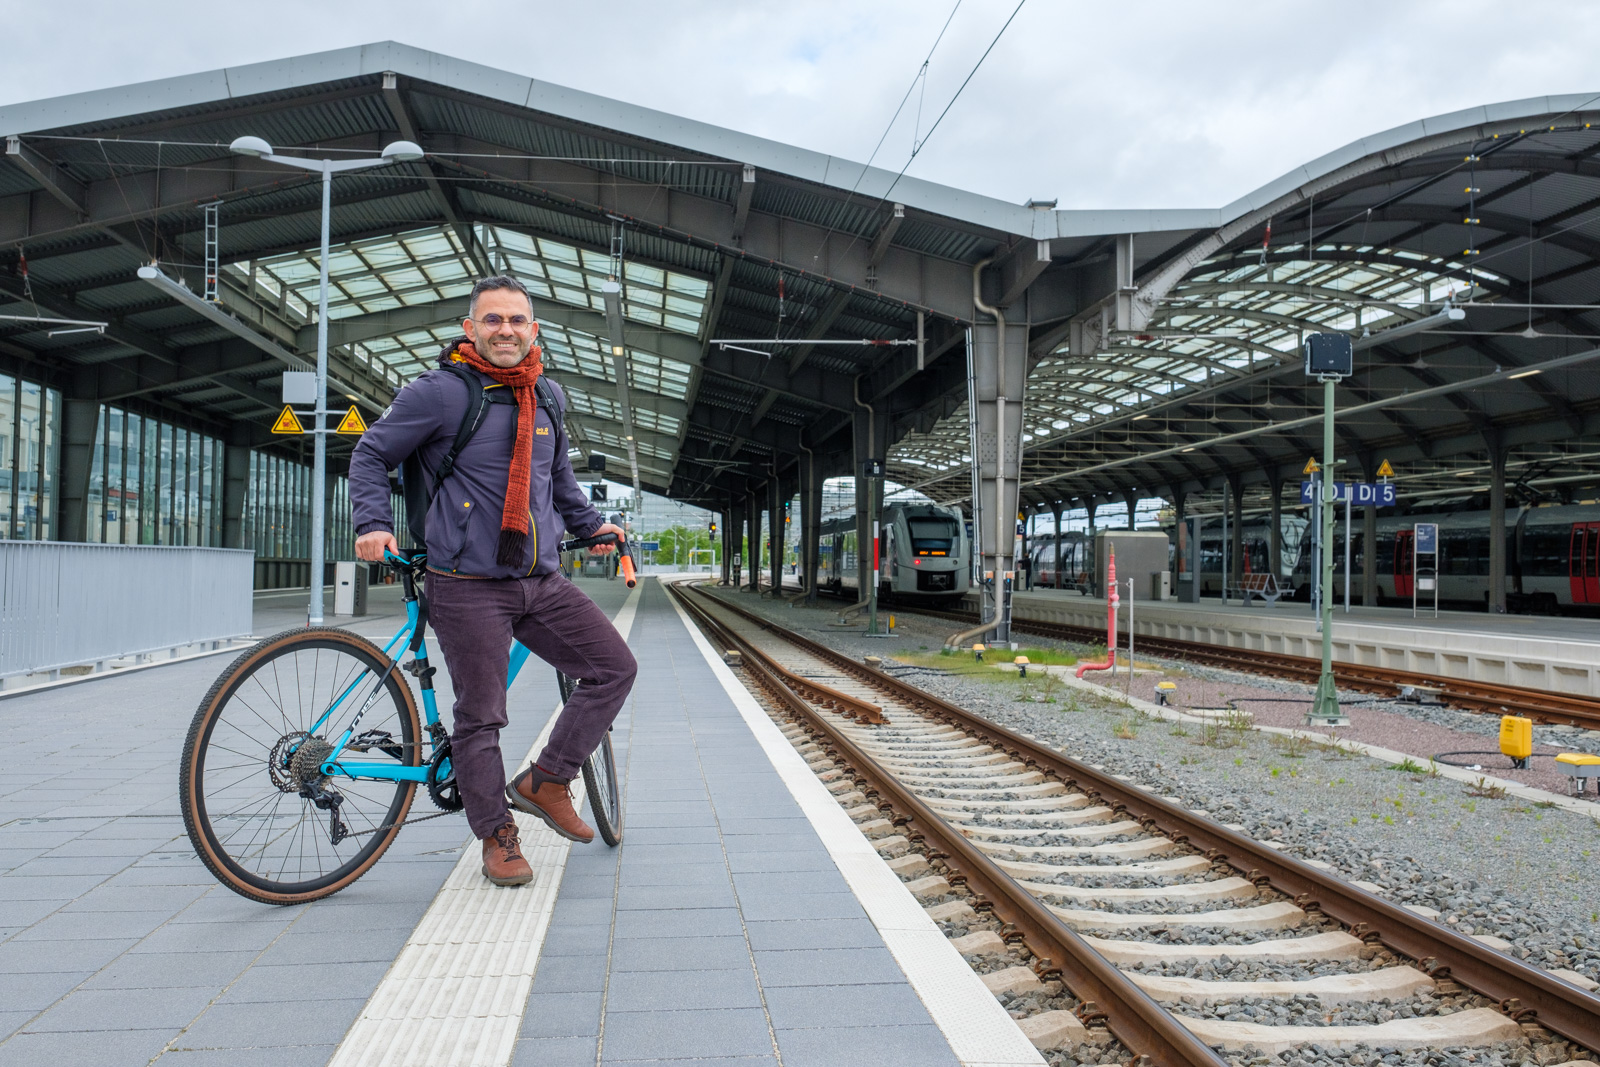 A man on his bike waits for a train on a station platform.